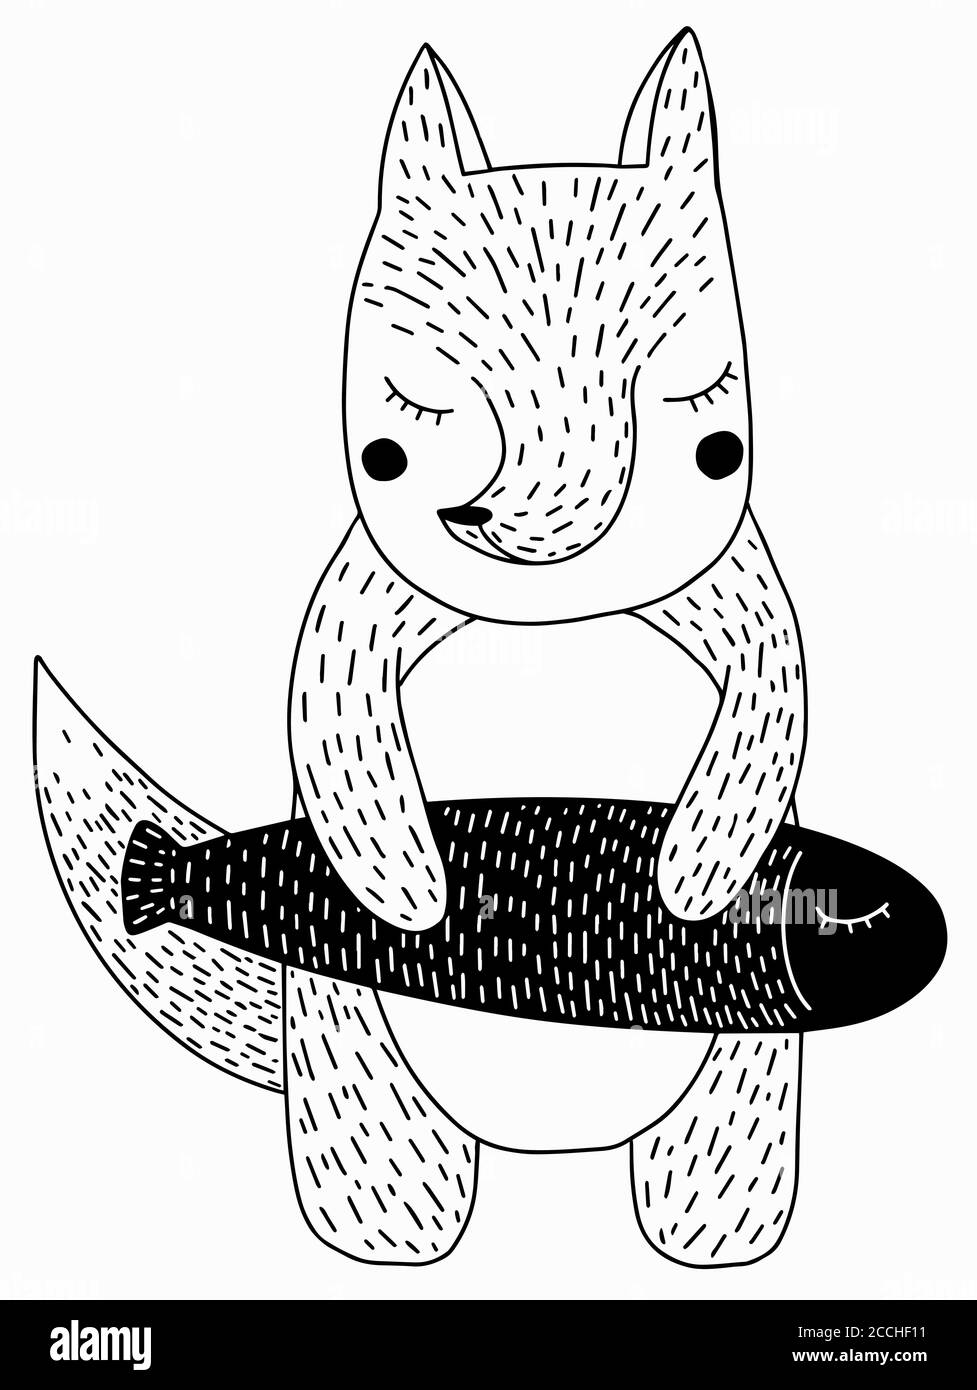 Carino personaggio di Fox e pesce in stile scandinavo disegnato a mano Illustrazione vettoriale Doodle Illustrazione Vettoriale